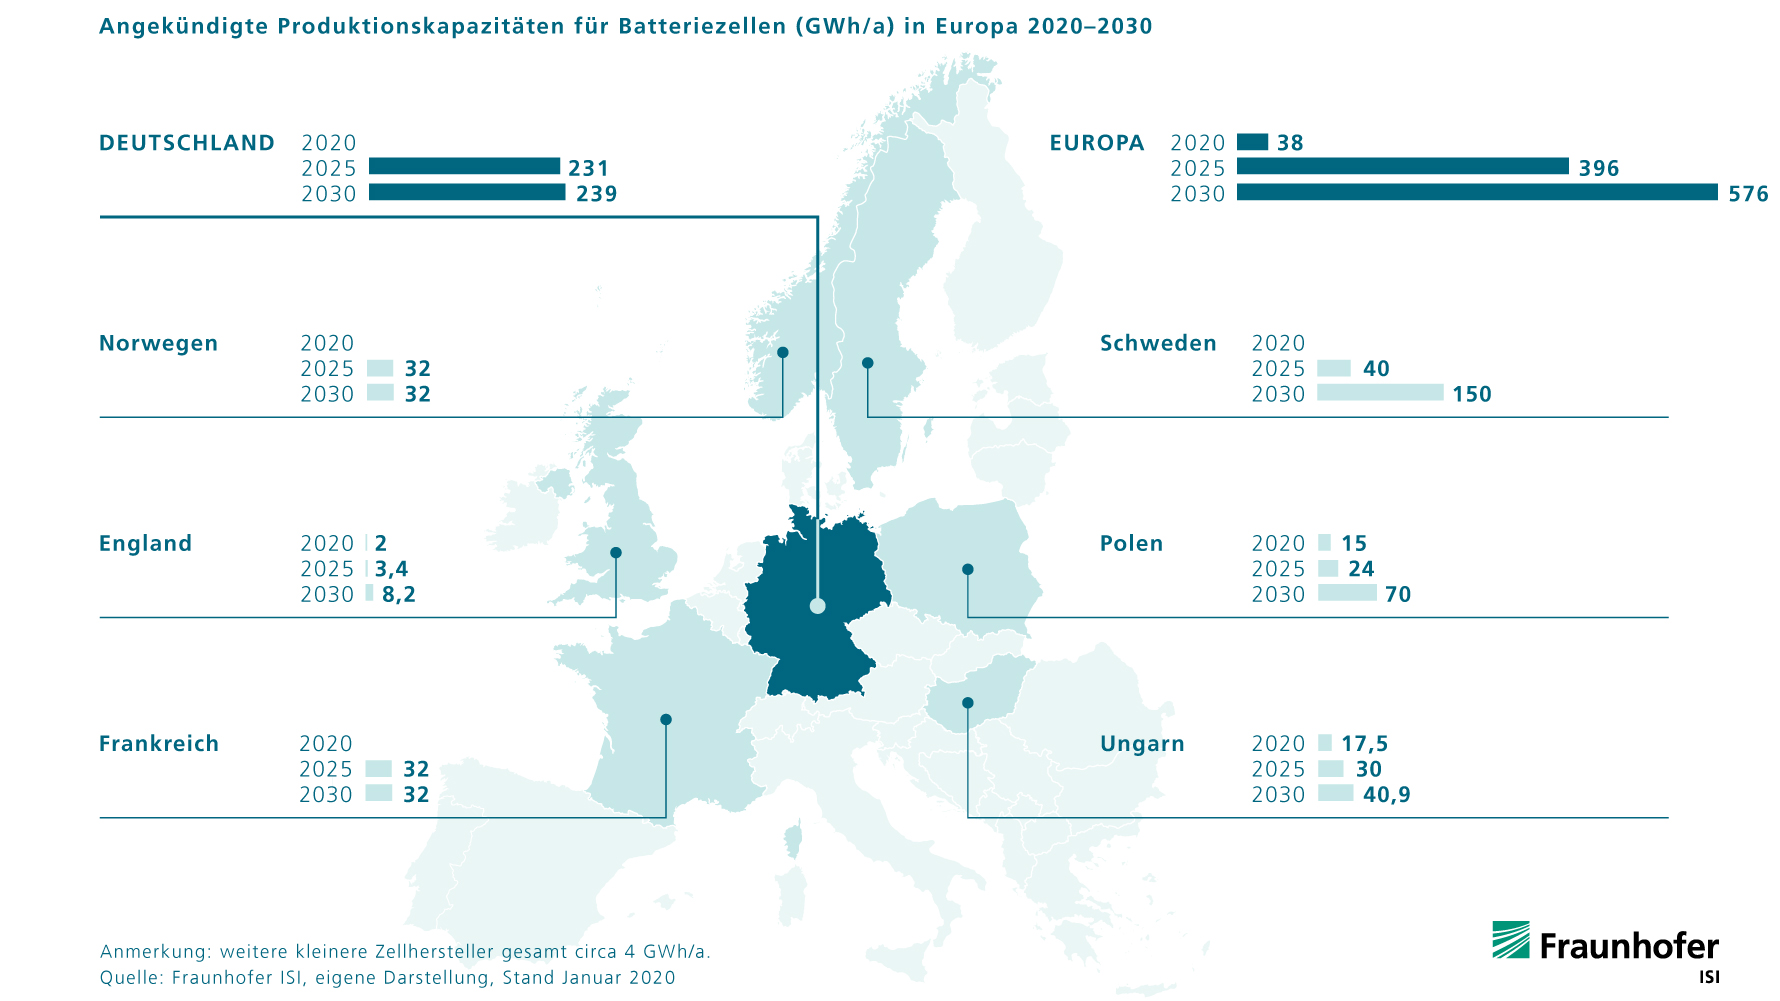 Angekündigte Batteriezell-Produktionskapazitäten Europa 2020-2030.